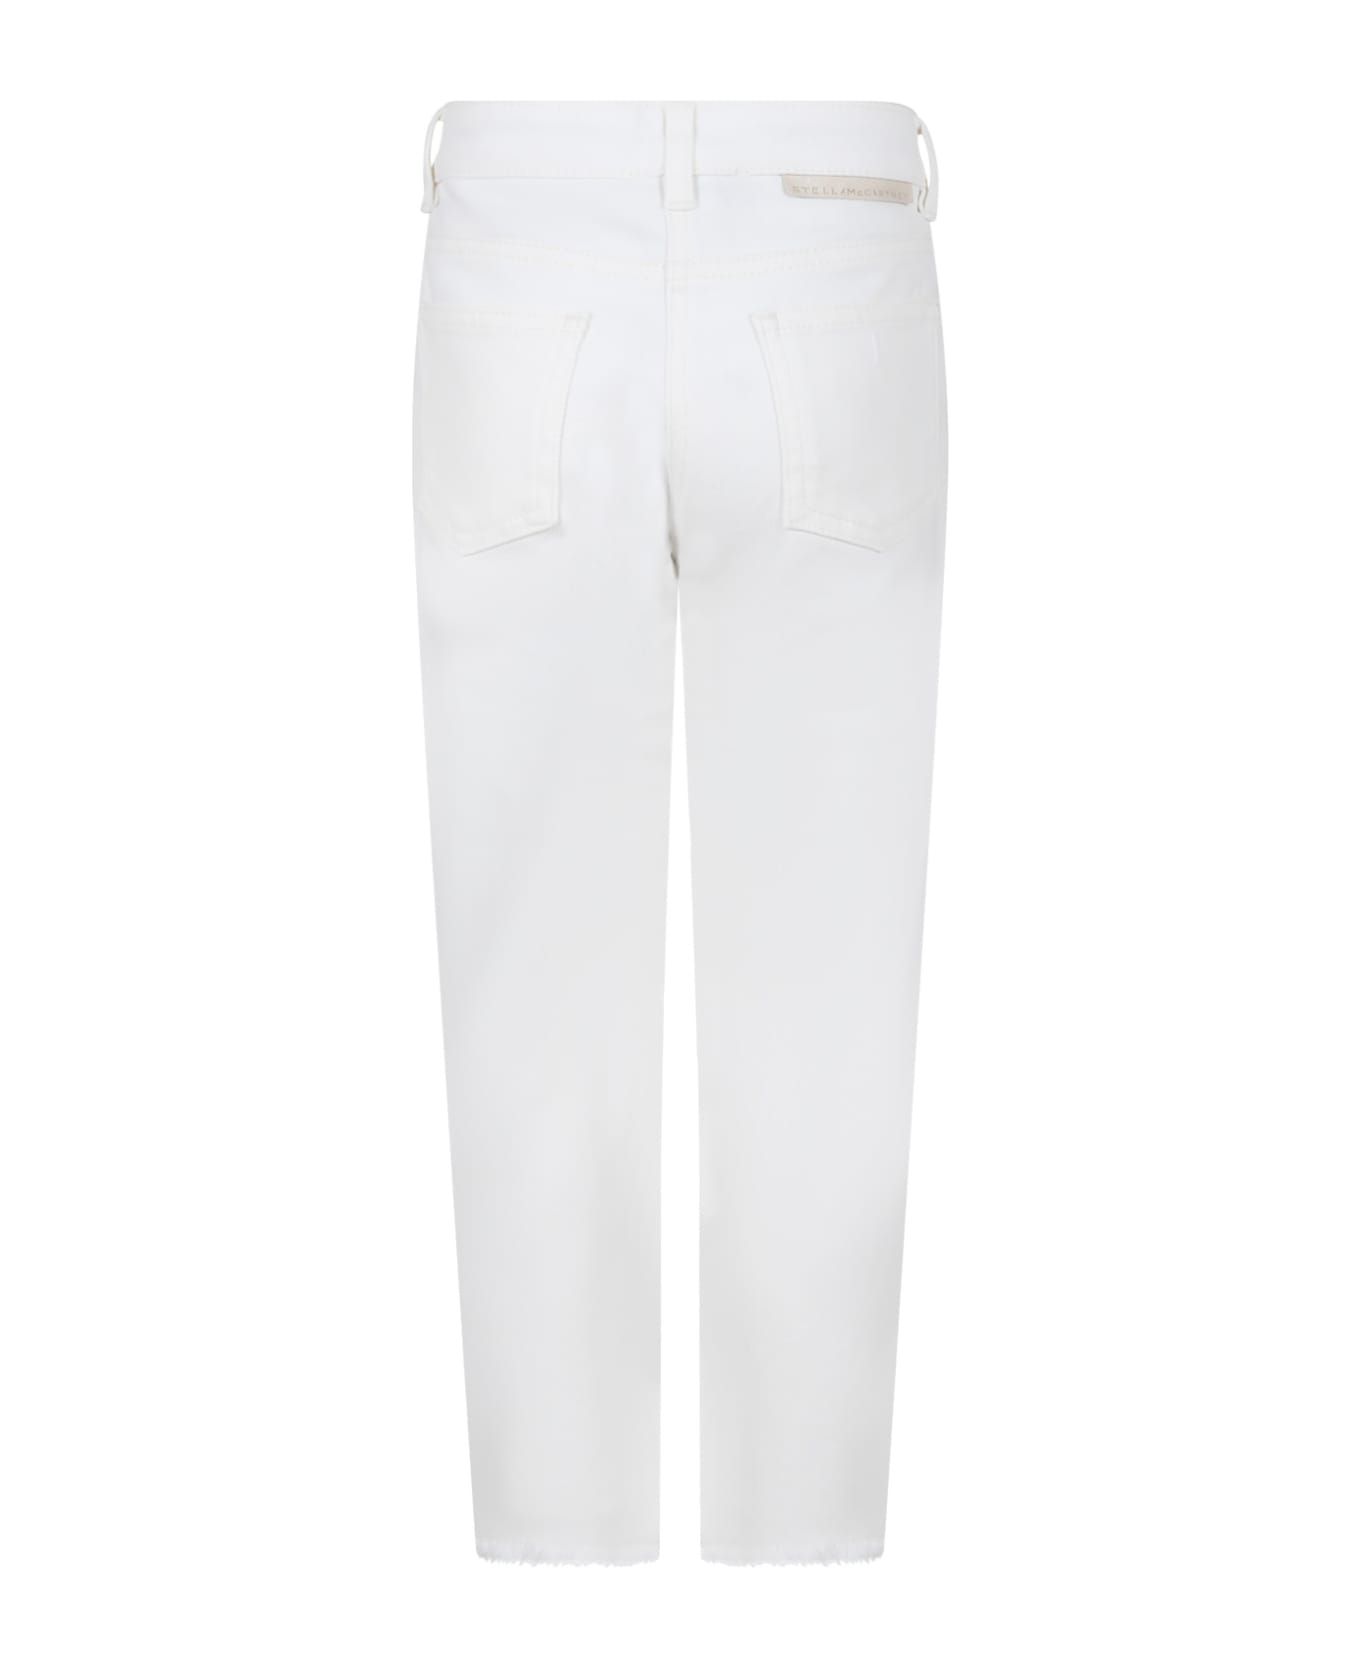 Stella McCartney Kids White Denim Jeans For Girl With Logo - White